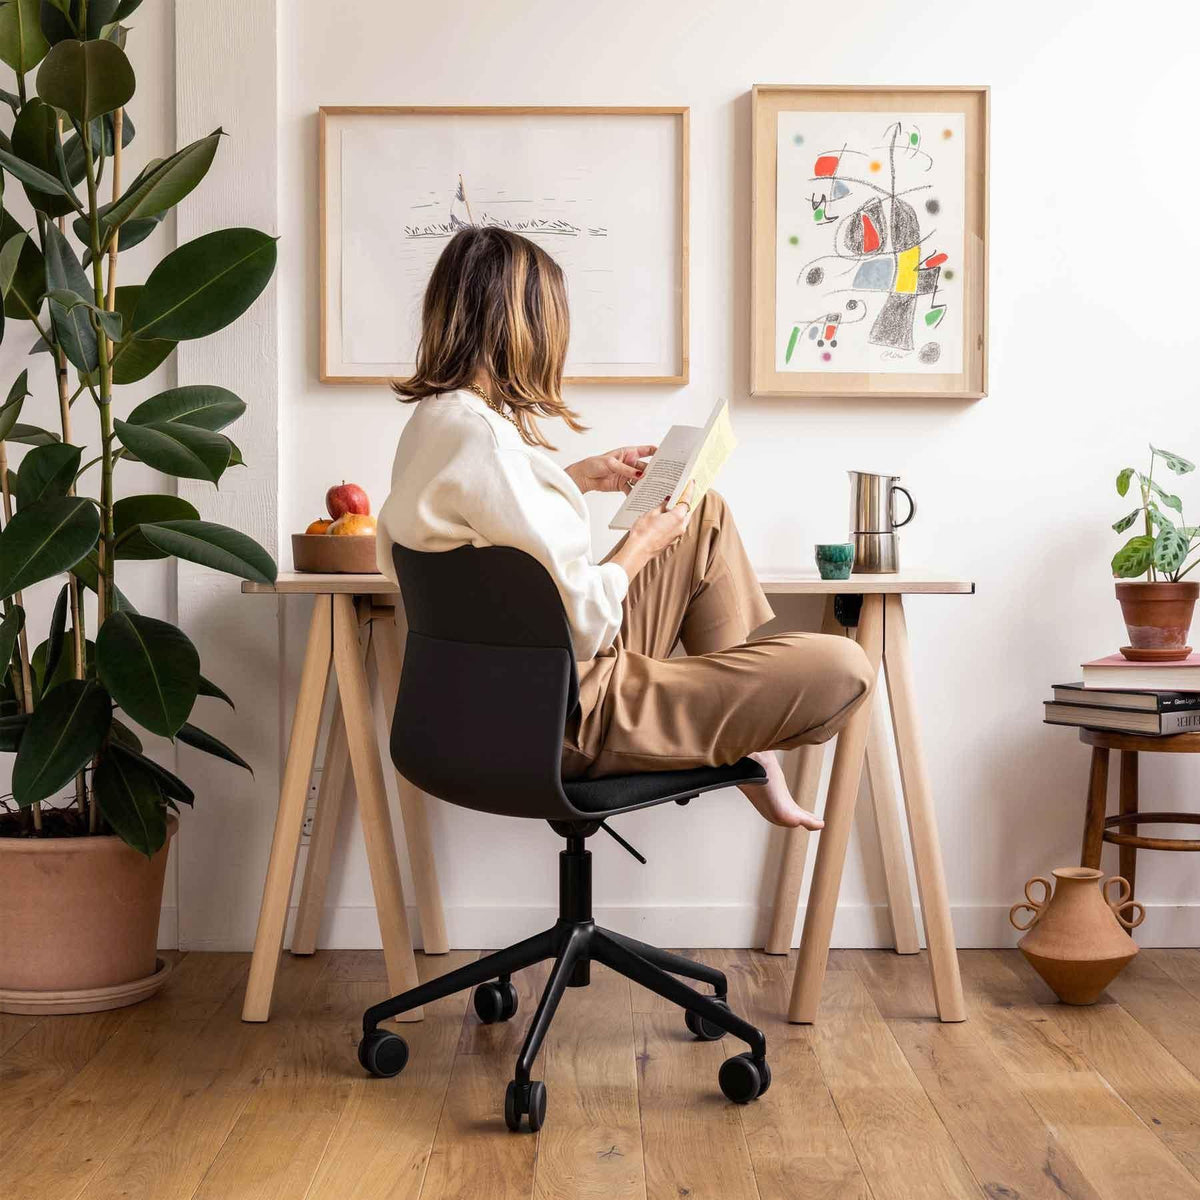 Chaise Chaise Design par Slean, vous est proposé par 37+ Design, le premier site dédié au Home Office et au télétravail en Europe